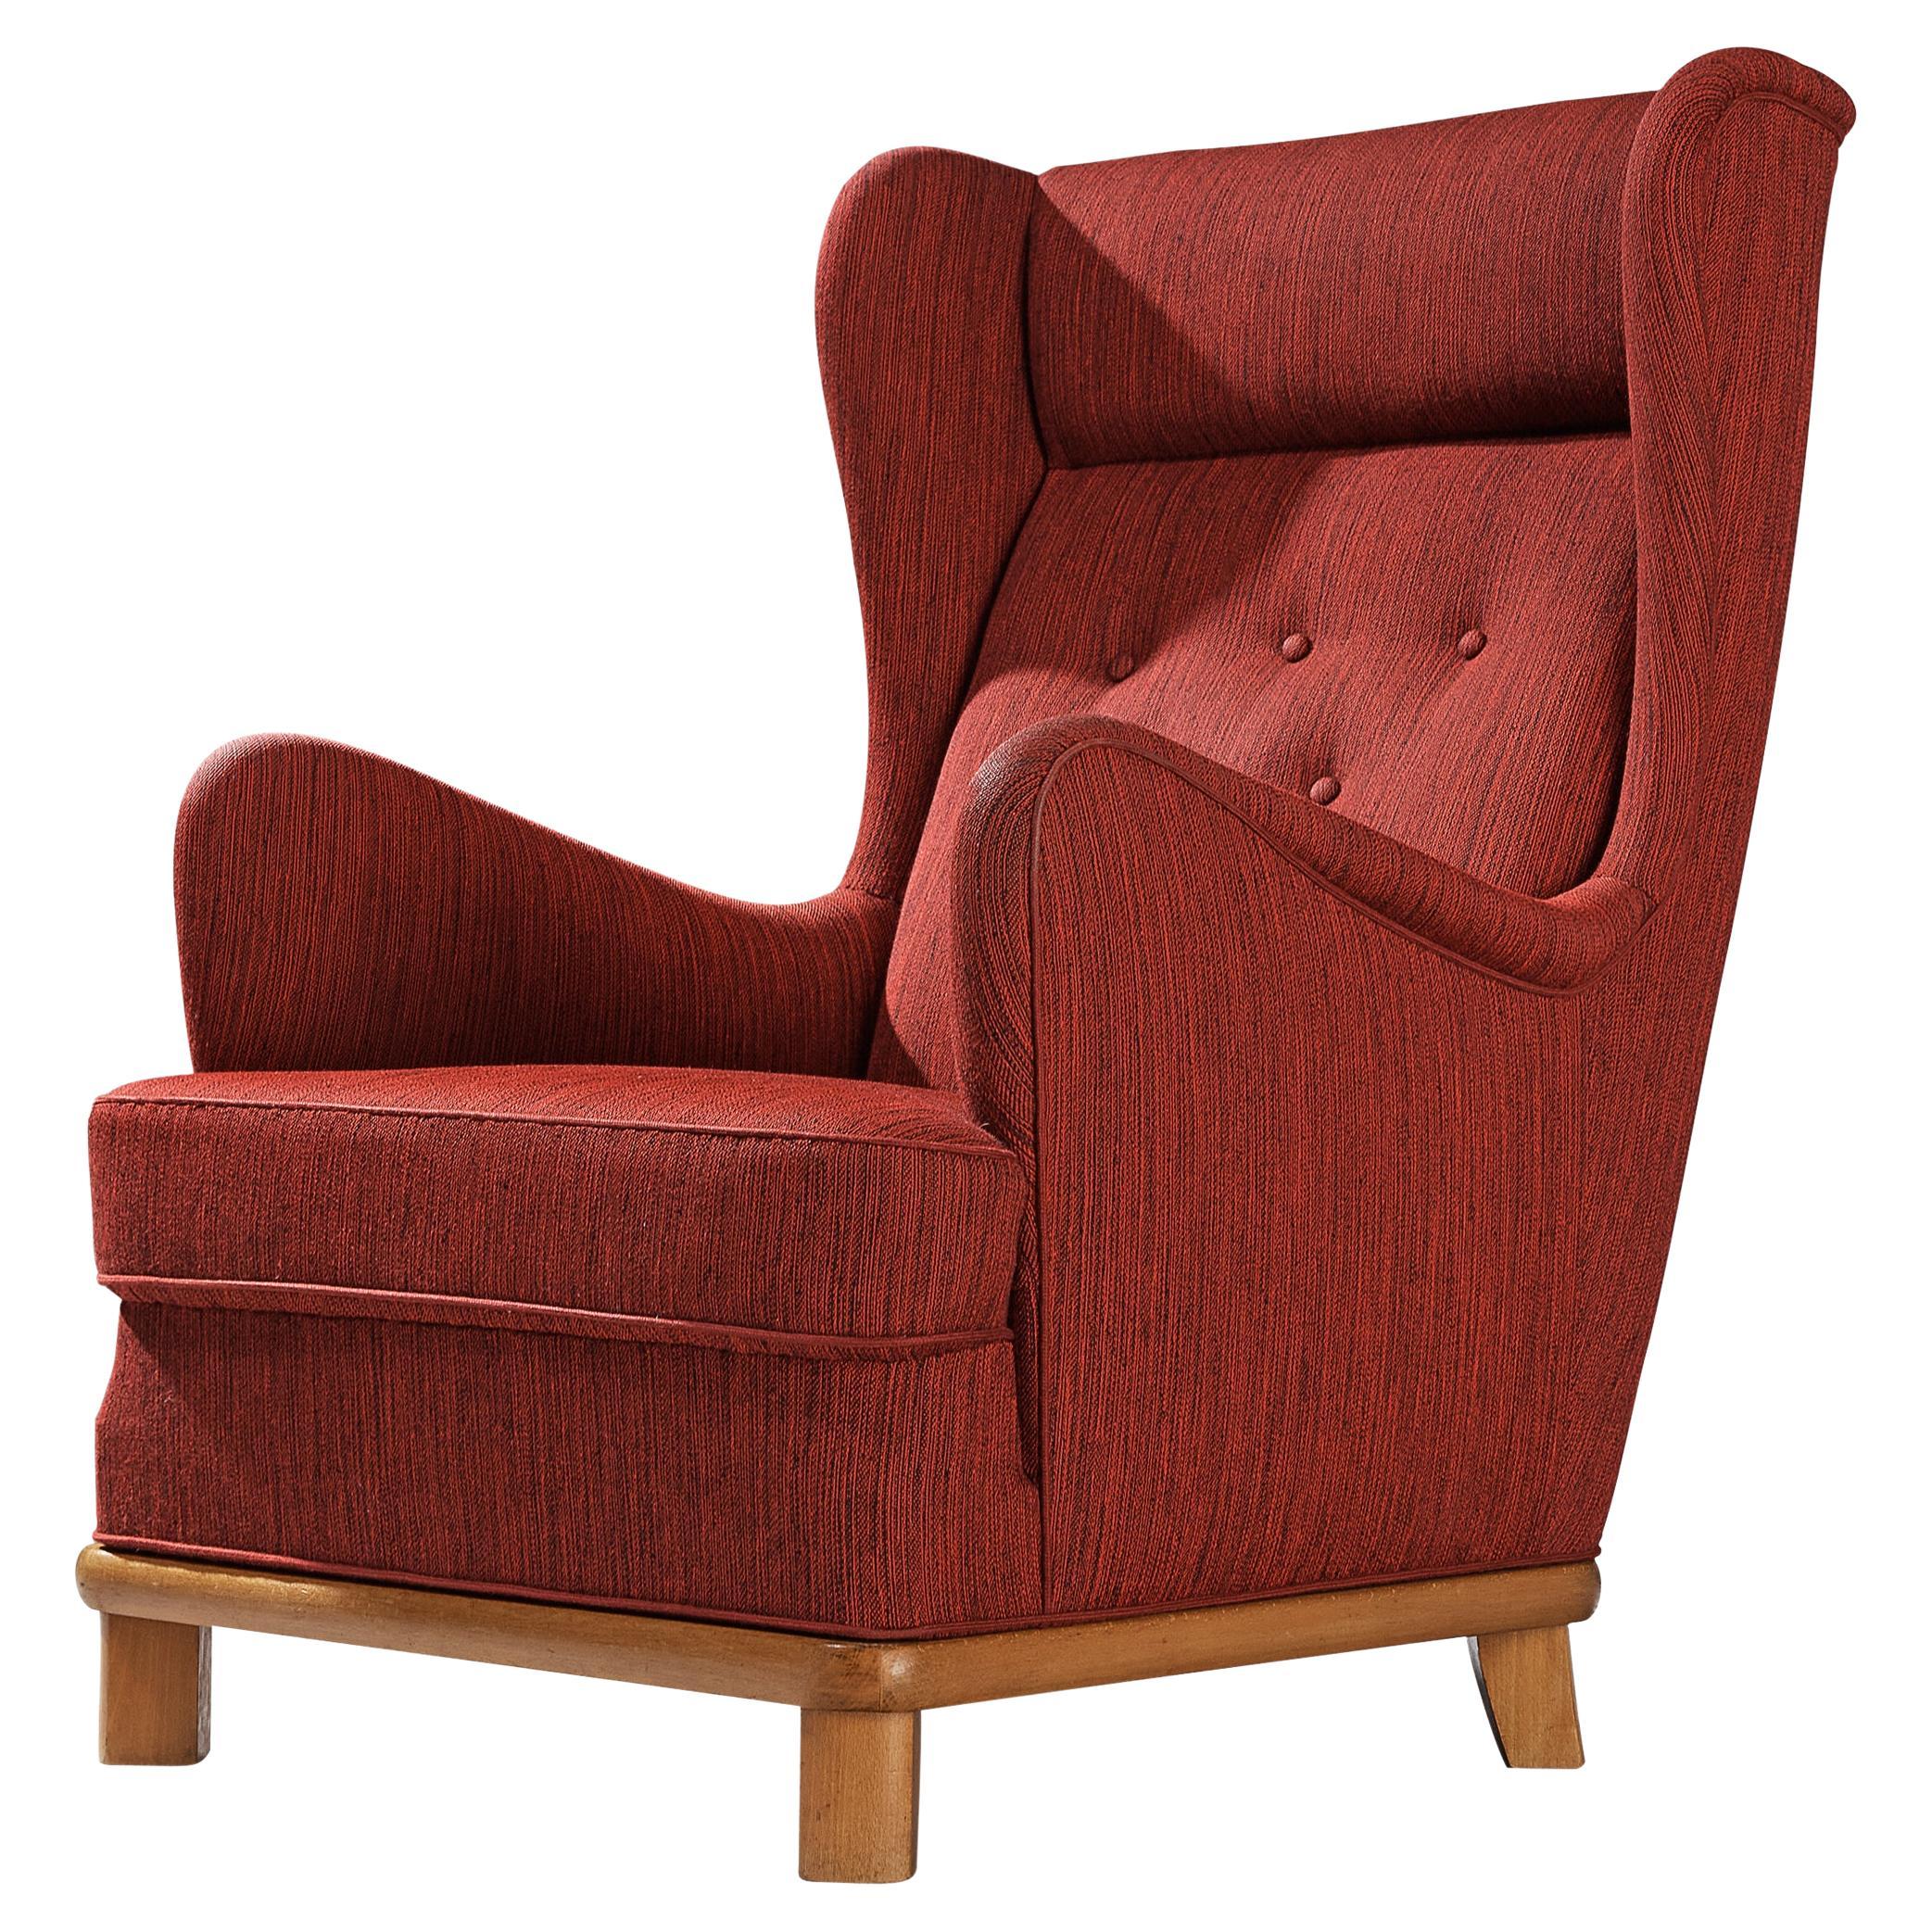 Fauteuil de repos, tissu, hêtre, Danemark, années 1950

Cet archétype de la chaise à oreilles des années 1950 est à la fois extrêmement confortable et agréable à regarder. Le fauteuil est revêtu d'un tissu finement texturé, présentant un mélange de